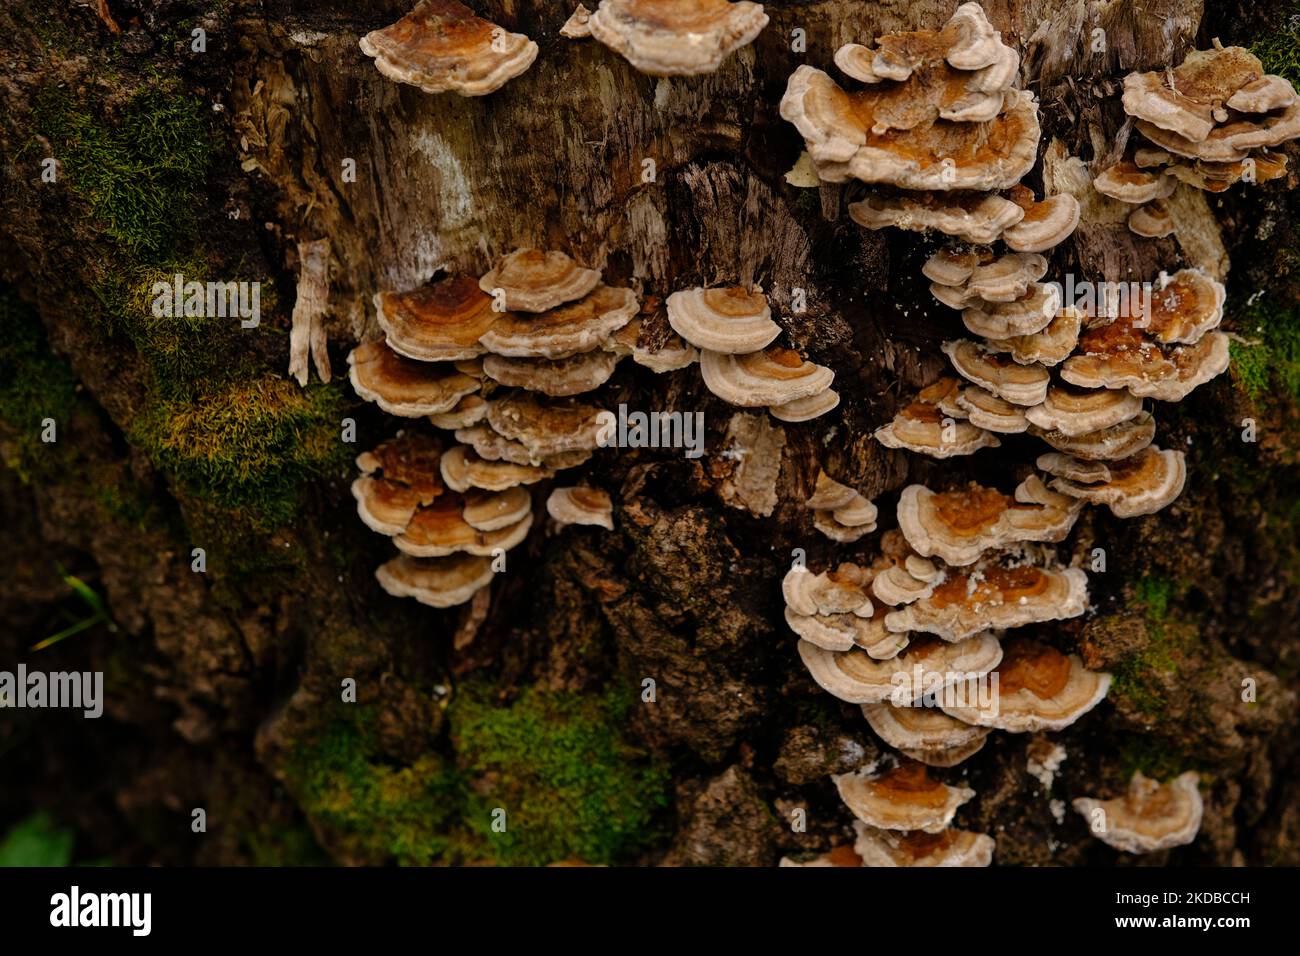 fungo parassita che cresce su tronchi d'albero. Fungo di tonder, fungo di zoccoli, cono di tonder, polipore di tonder o fungo di ghiaccio dell'uomo. Foto Stock